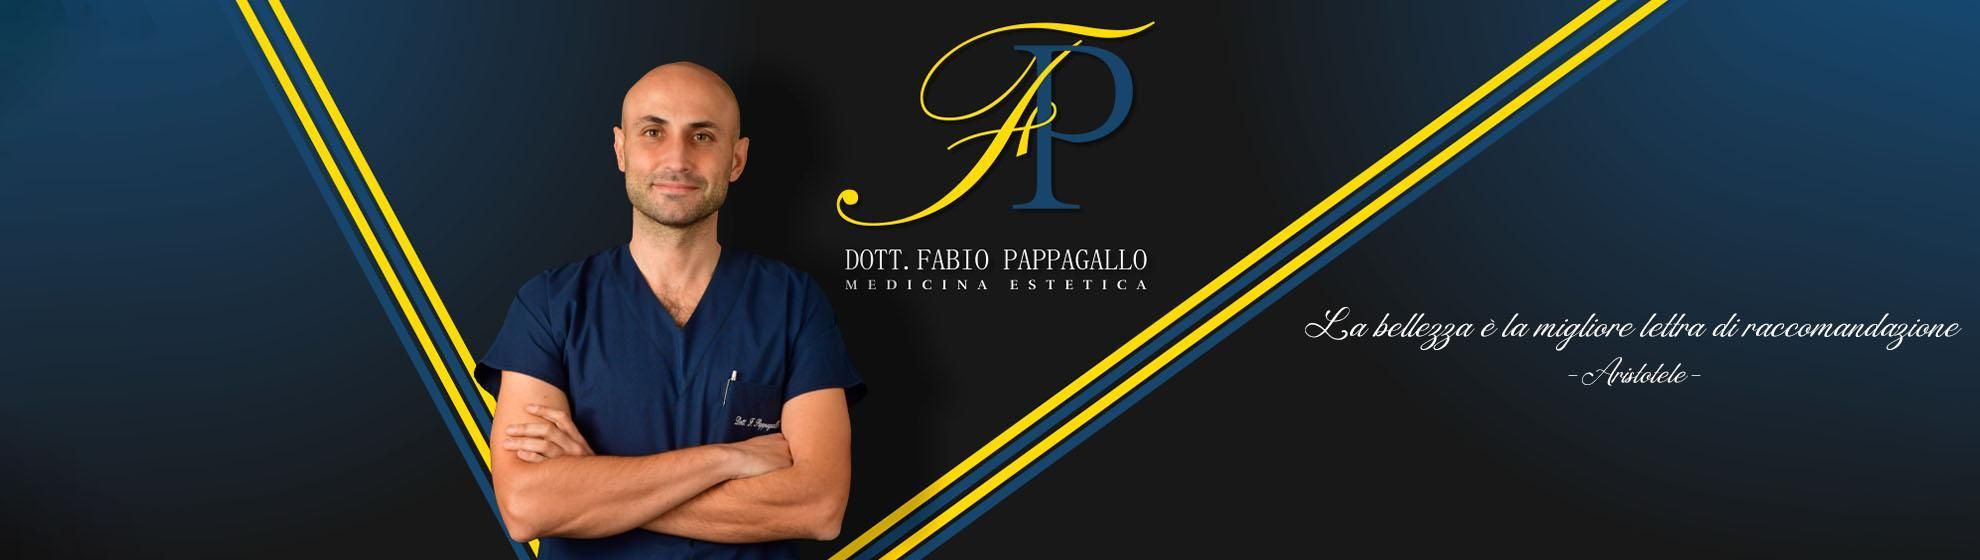 Dott. Fabio Pappagallo